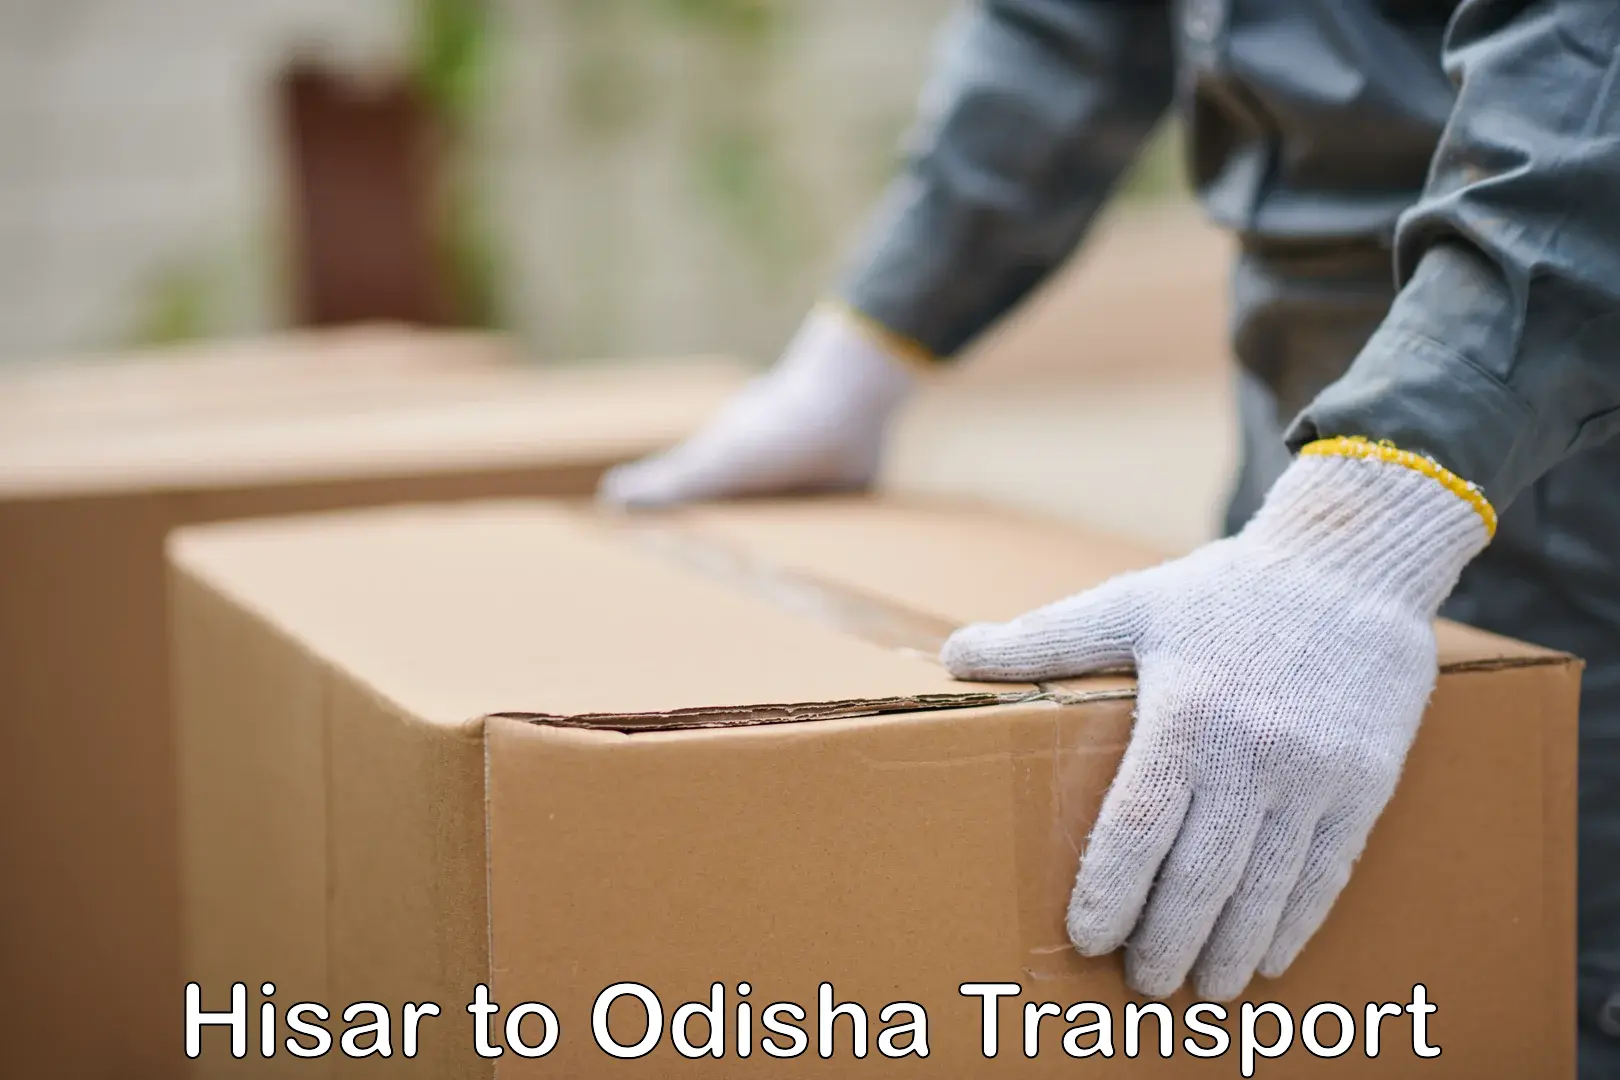 Bike transport service Hisar to Odisha